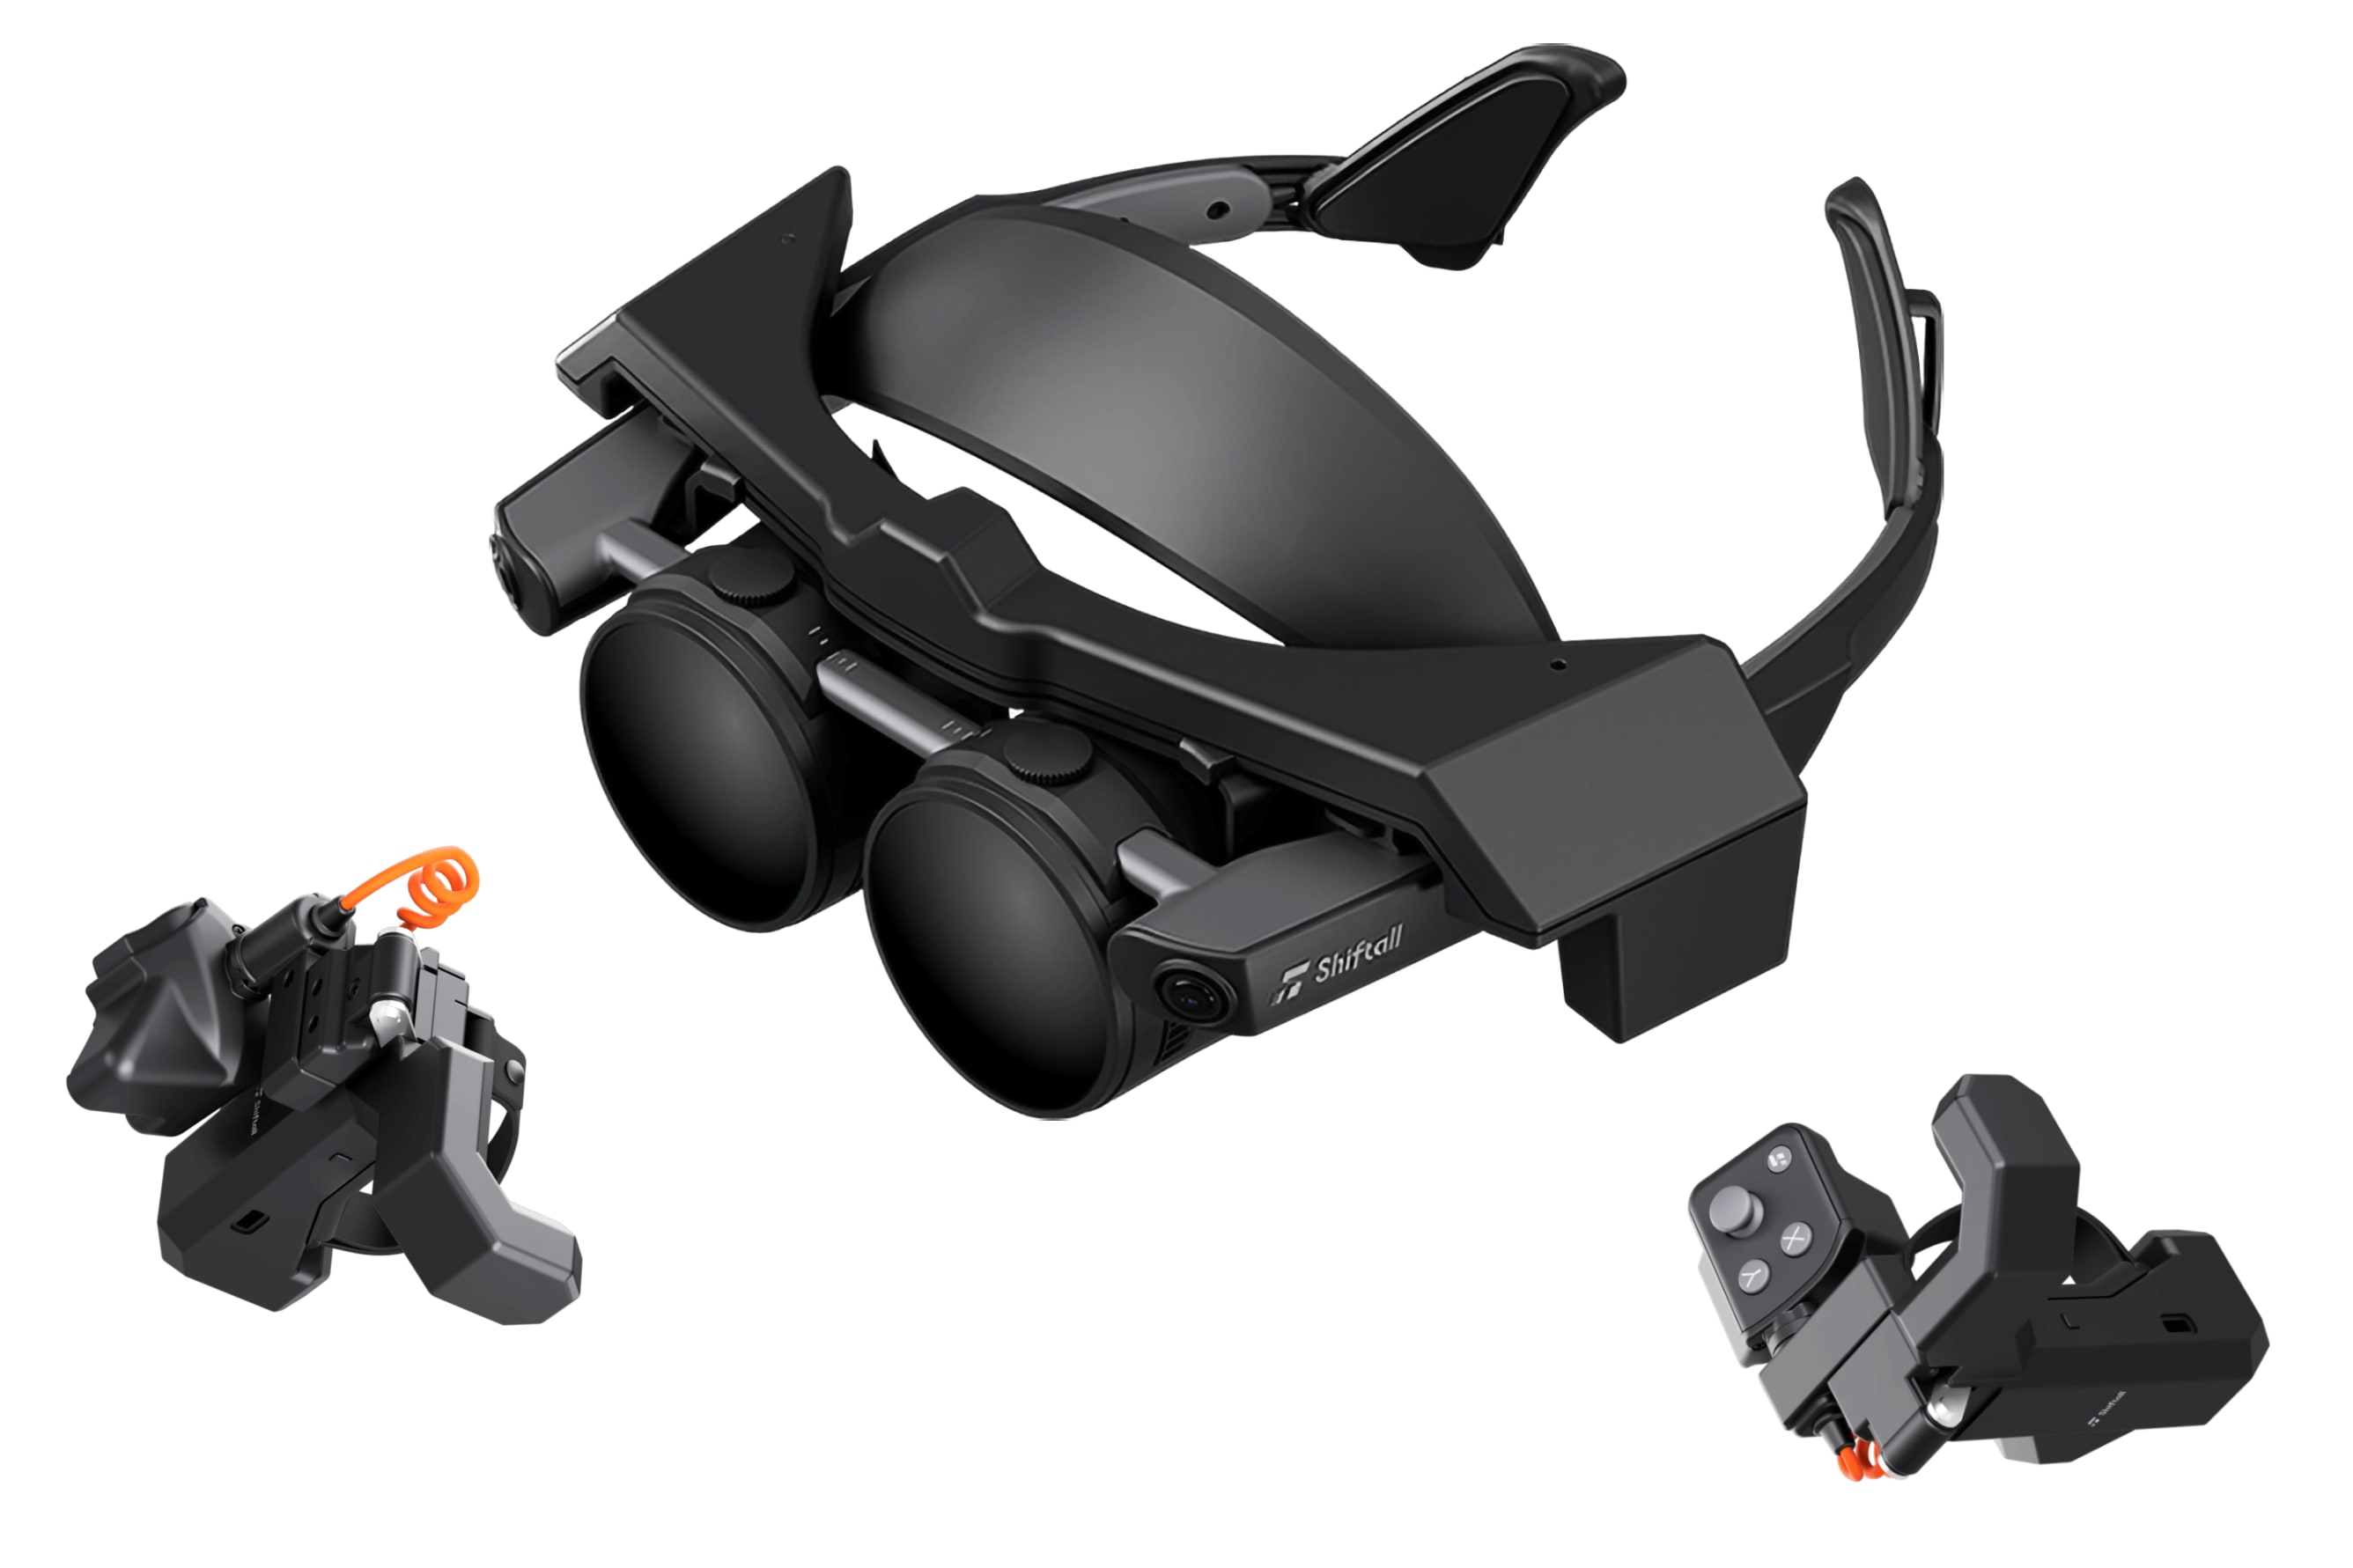 O fone de ouvido MeganeX VR da Shiftall é notavelmente fino.